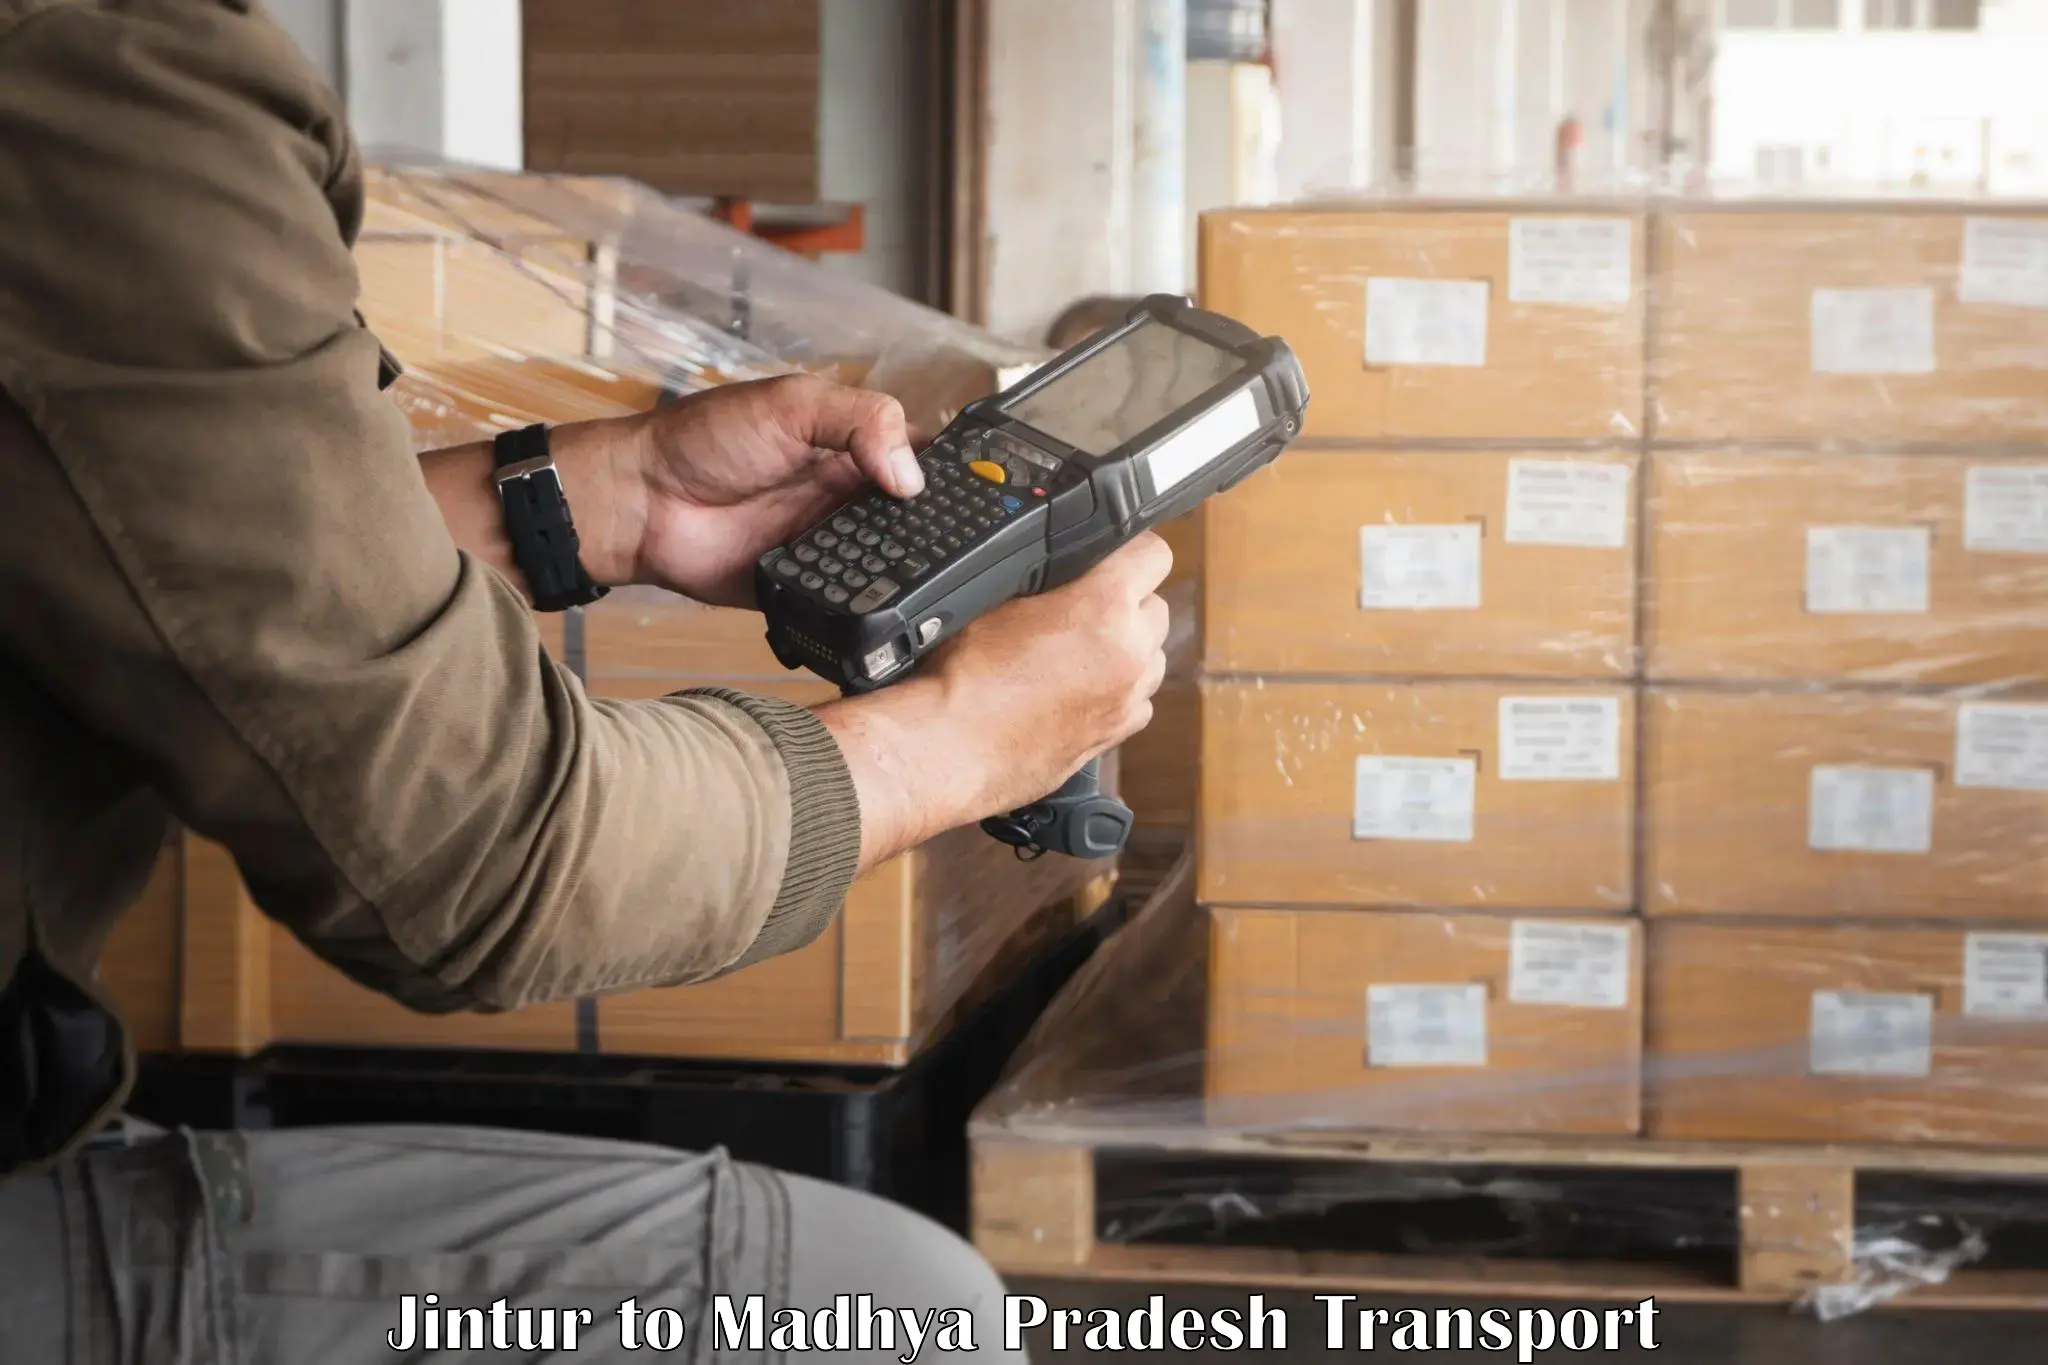 Shipping partner Jintur to Madhya Pradesh